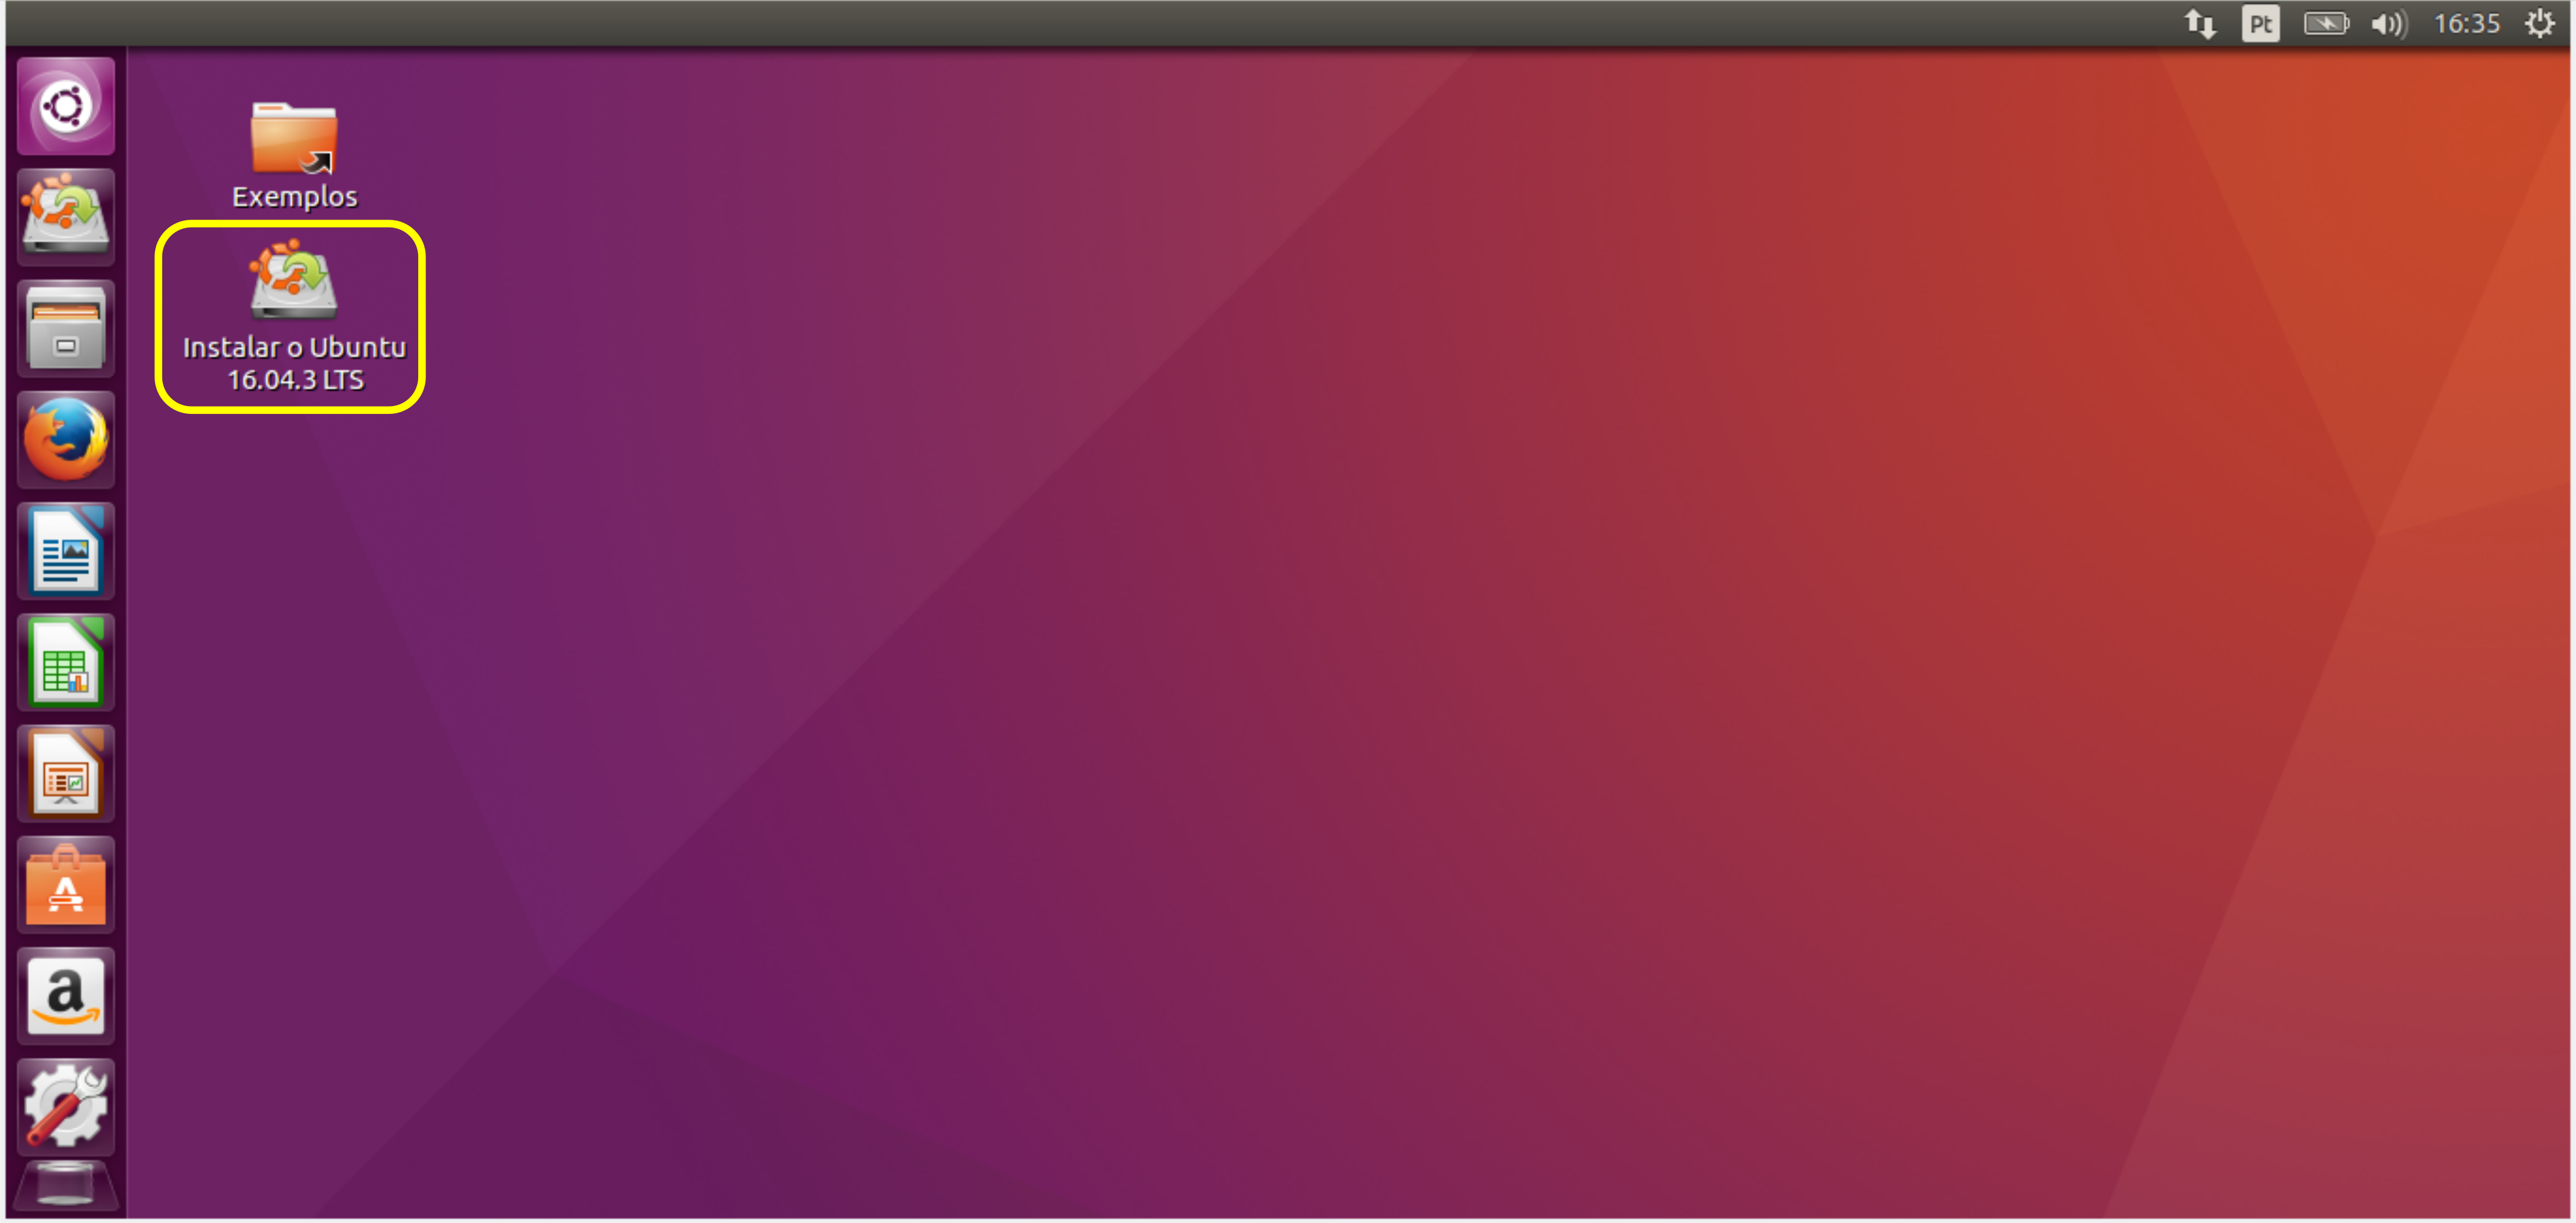 Instalar o Ubuntu 16.04.3 - Instalar